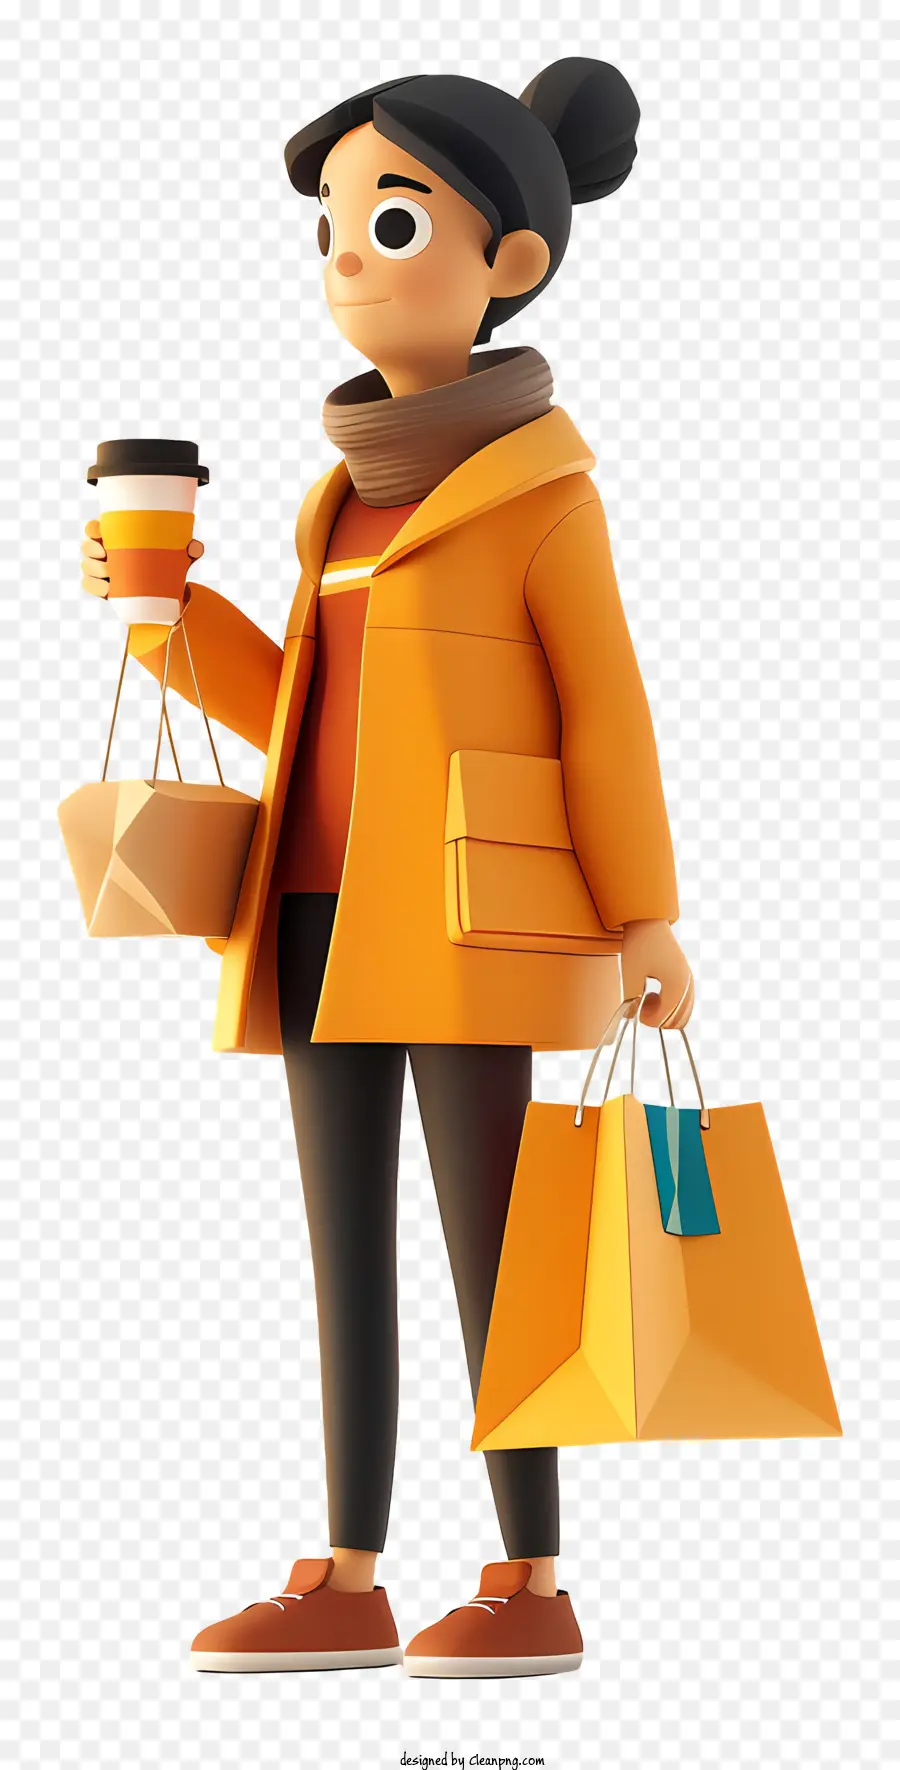 Kaffee - Glückliche Frau mit Einkaufstaschen und Kaffee